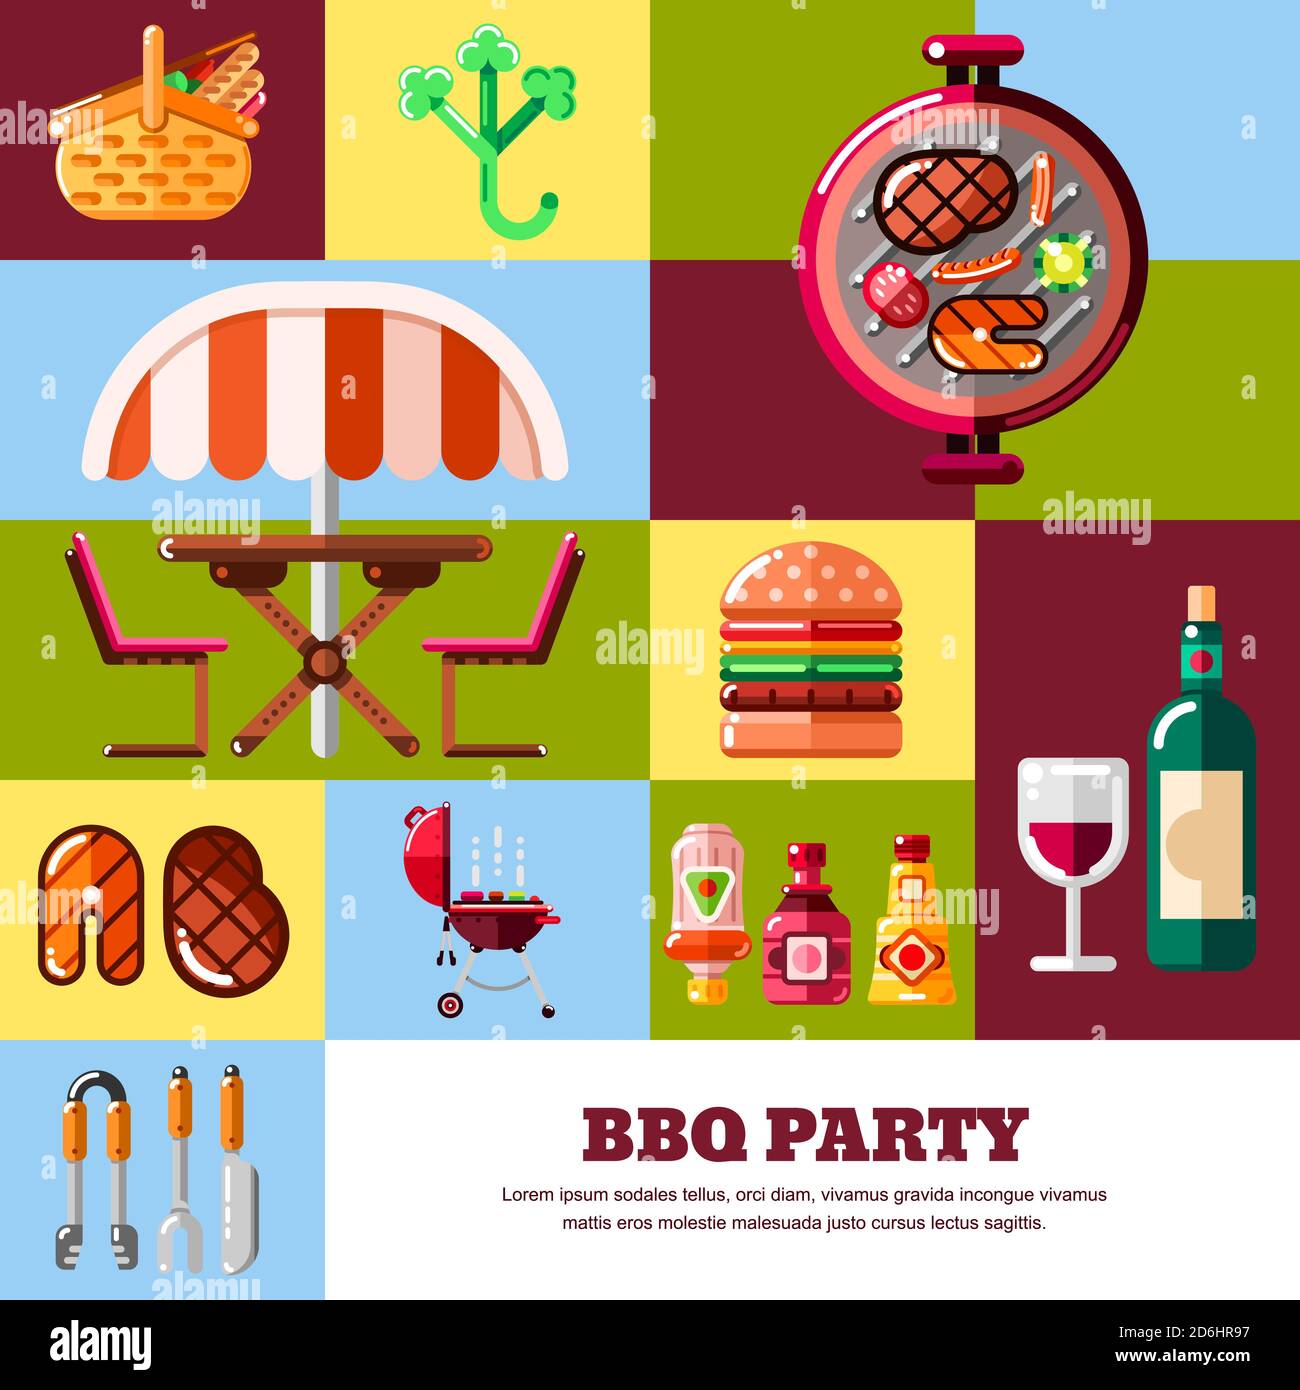 Poster vettoriale geometrico astratto multicolore o modello di banner. Elementi di grafica e design per barbecue e grigliate. Barbecue alimentare, attrezzature e attrezzi ico Illustrazione Vettoriale